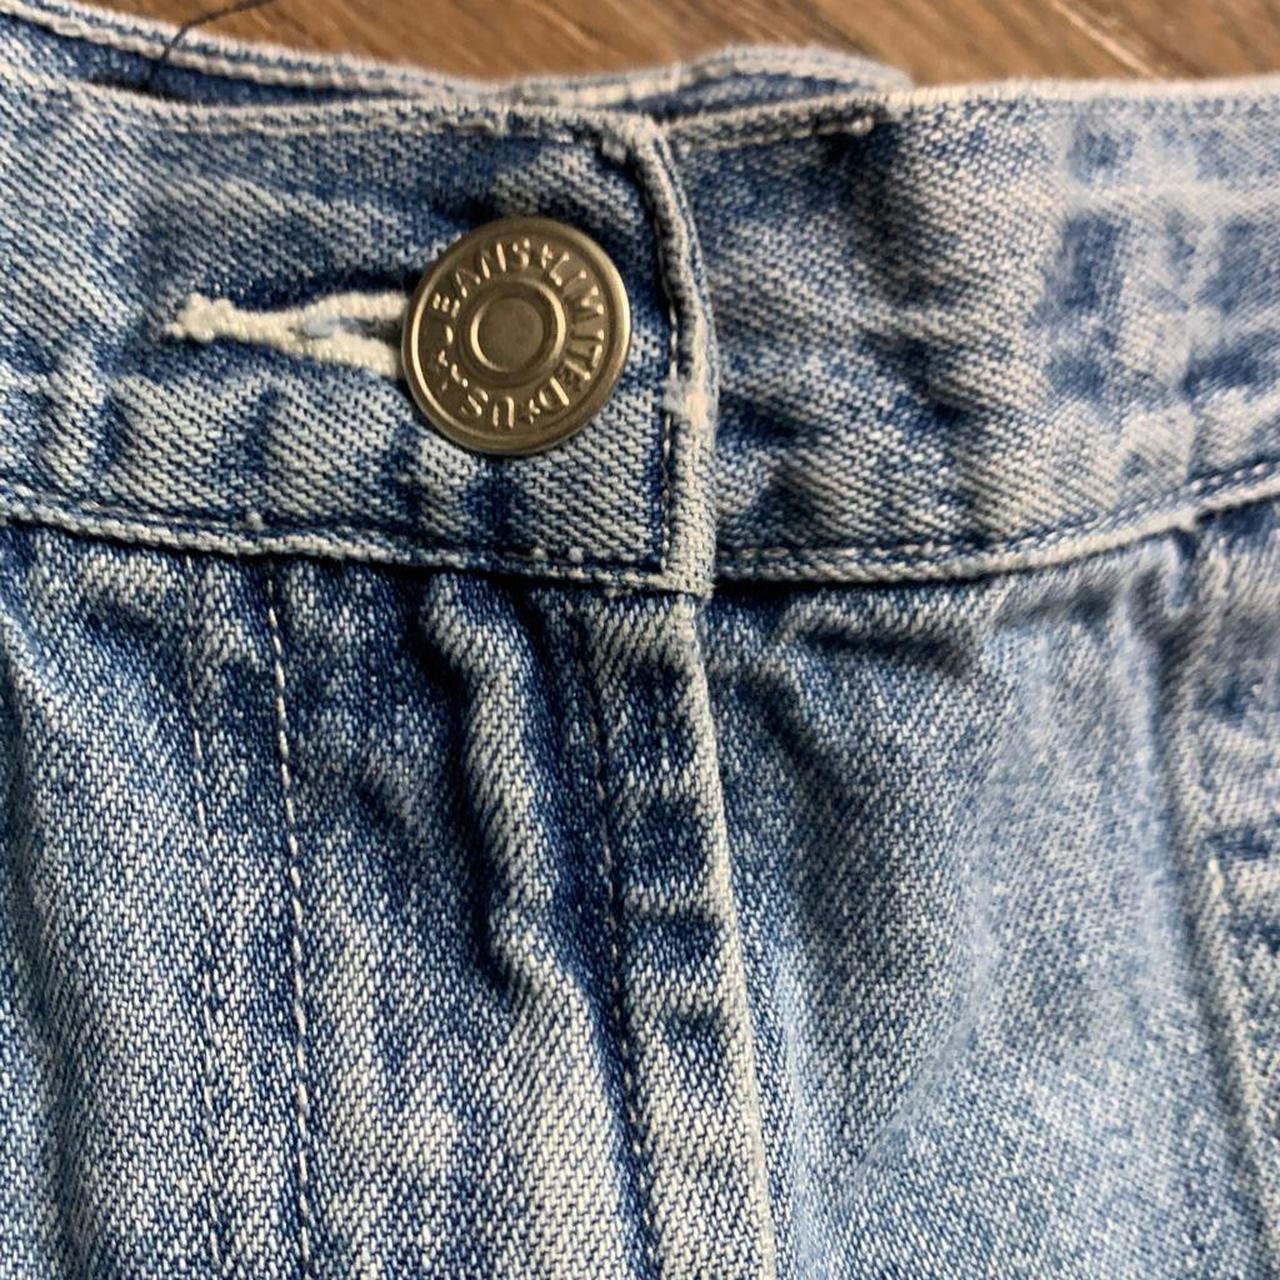 Vintage jean shorts high rise, big pockets, light... - Depop